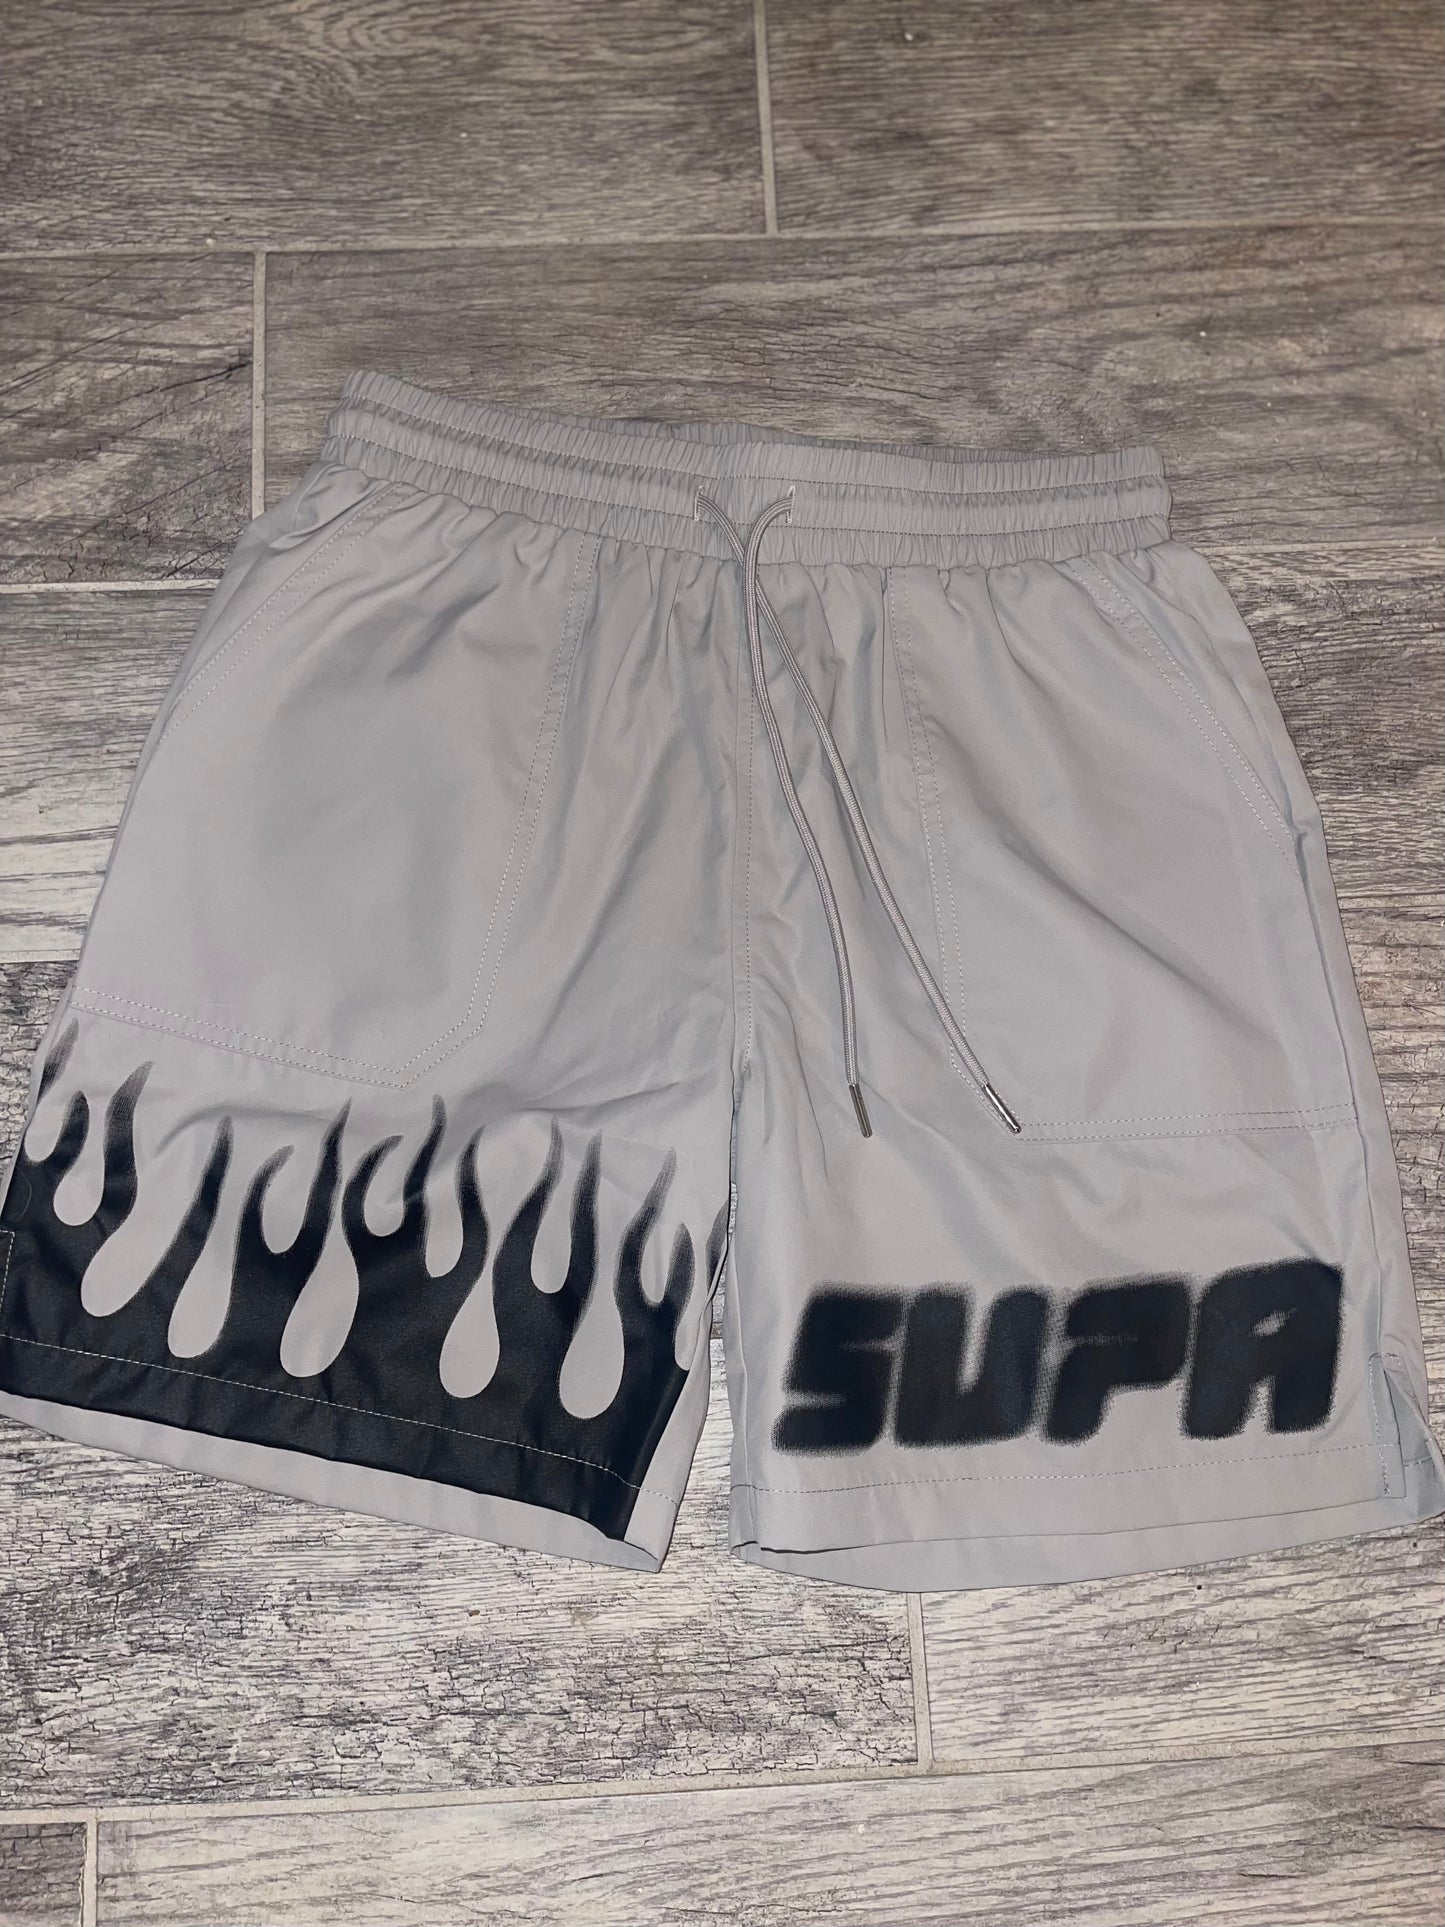 SUPA Flame shorts